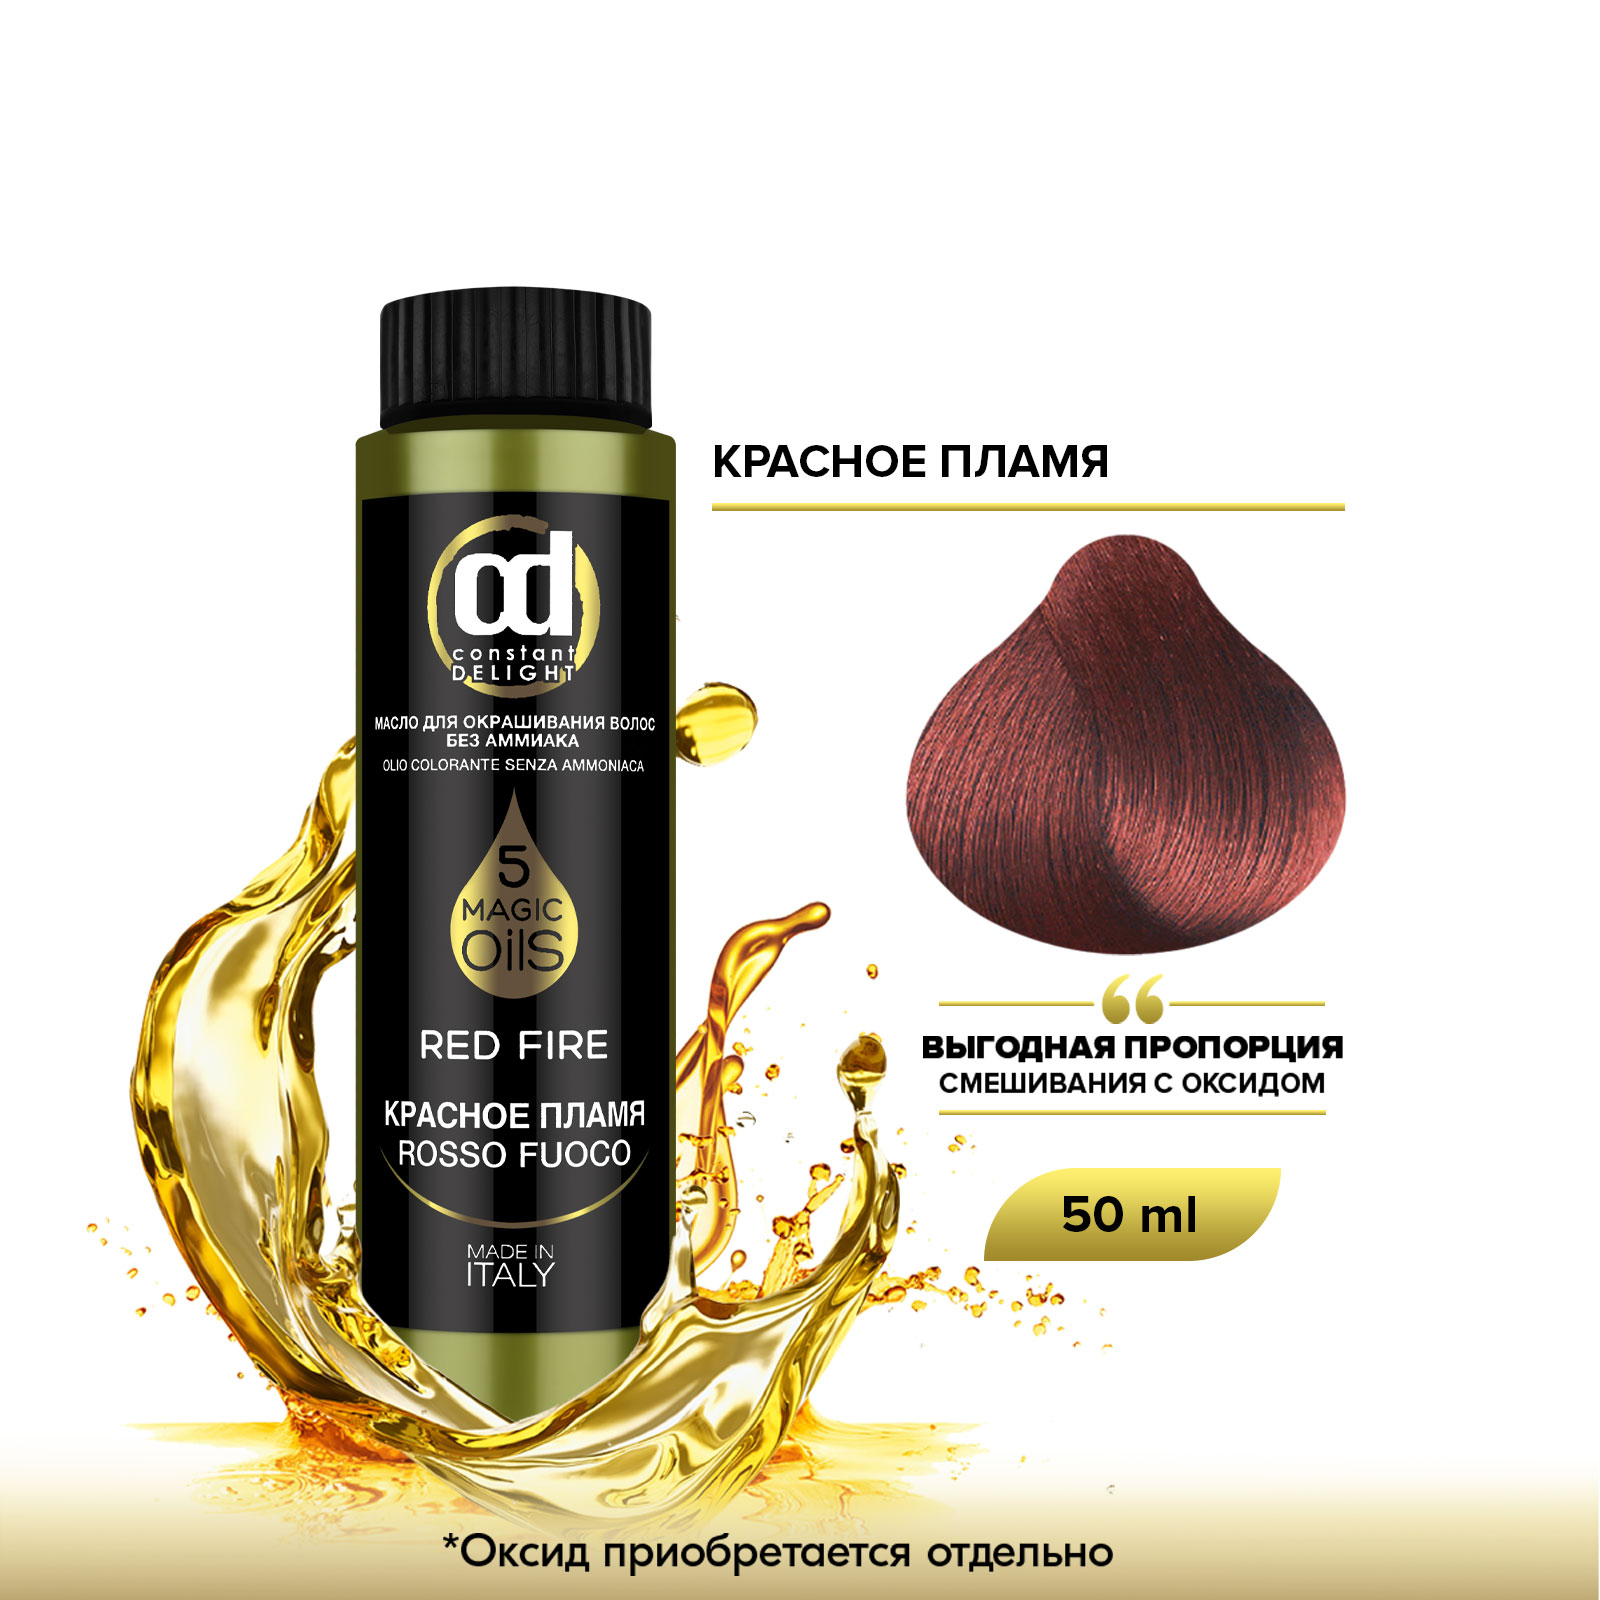 Масло Constant Delight Magic 5 Oils для окрашивания волос красное пламя 50 мл magic alatai крем для лица питание 50 0